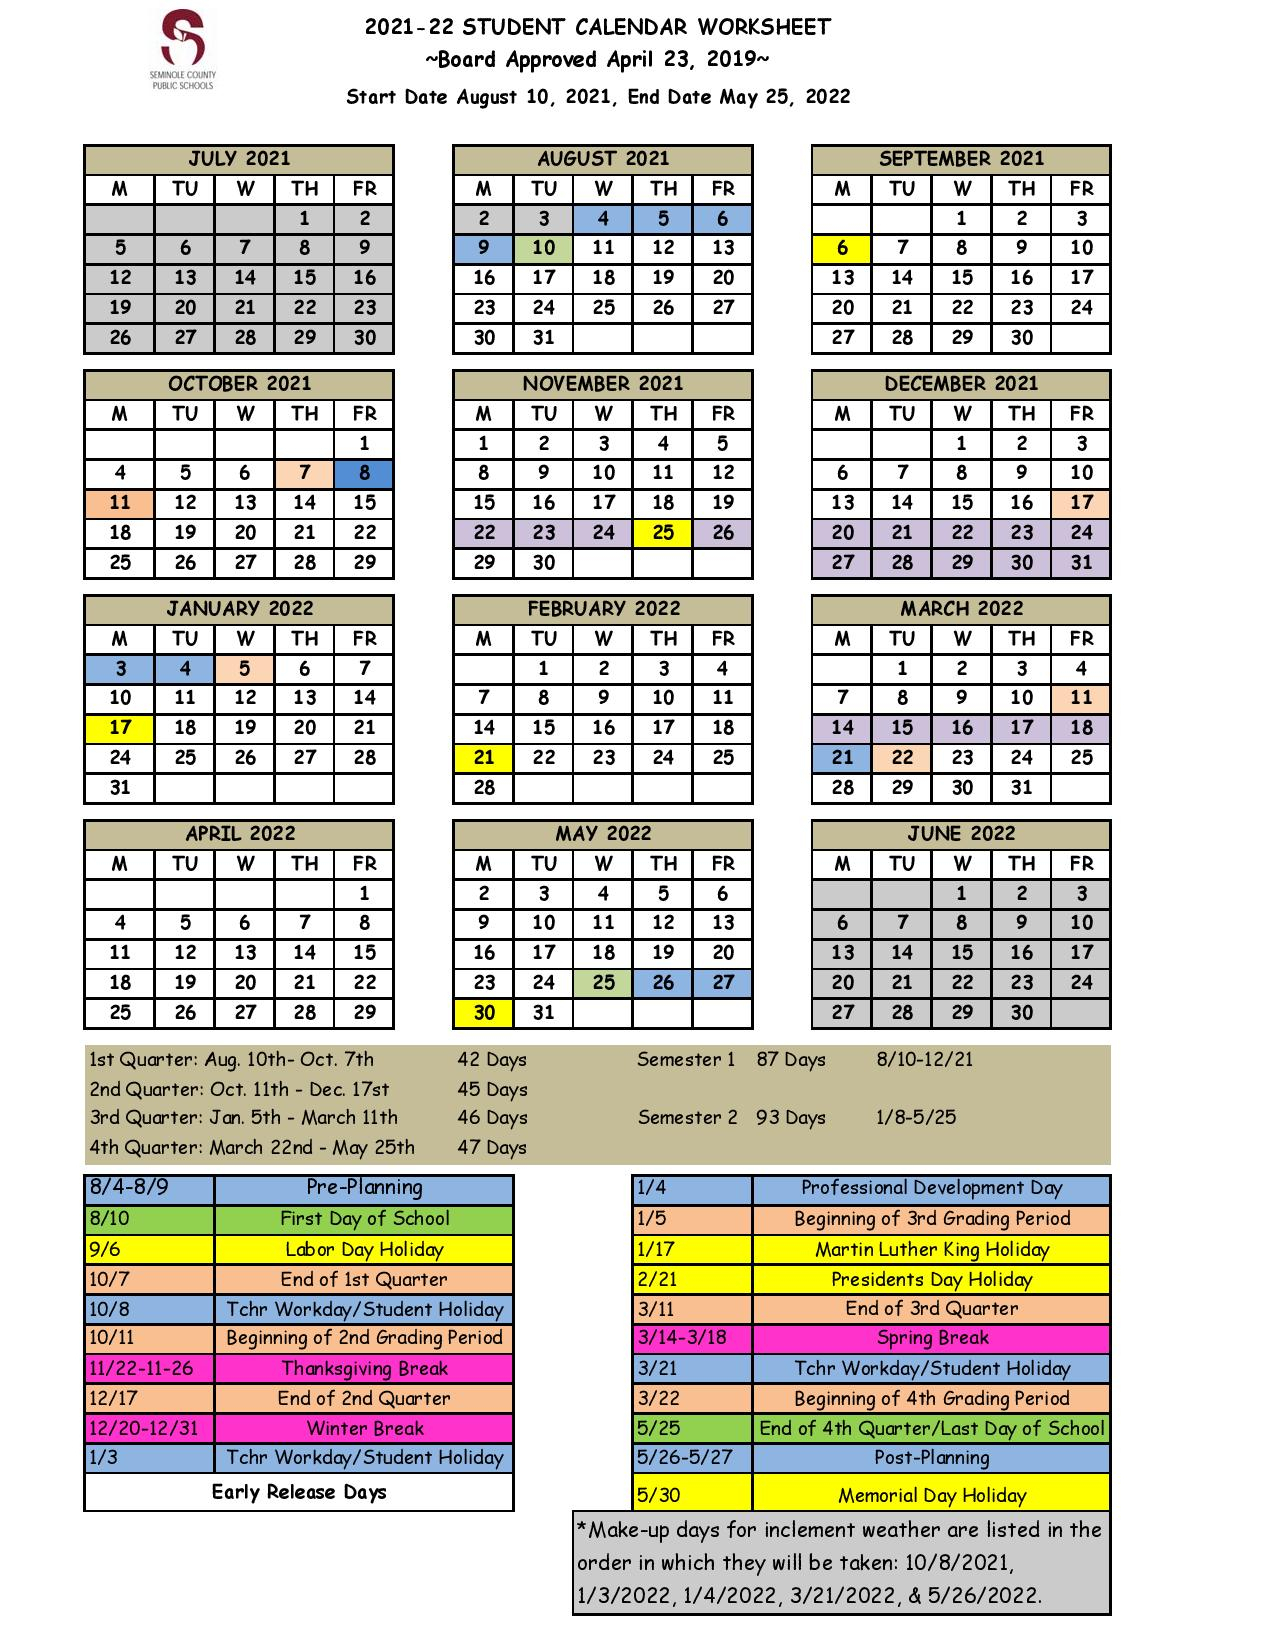 Seminole County Public Schools Calendar 2021-2022